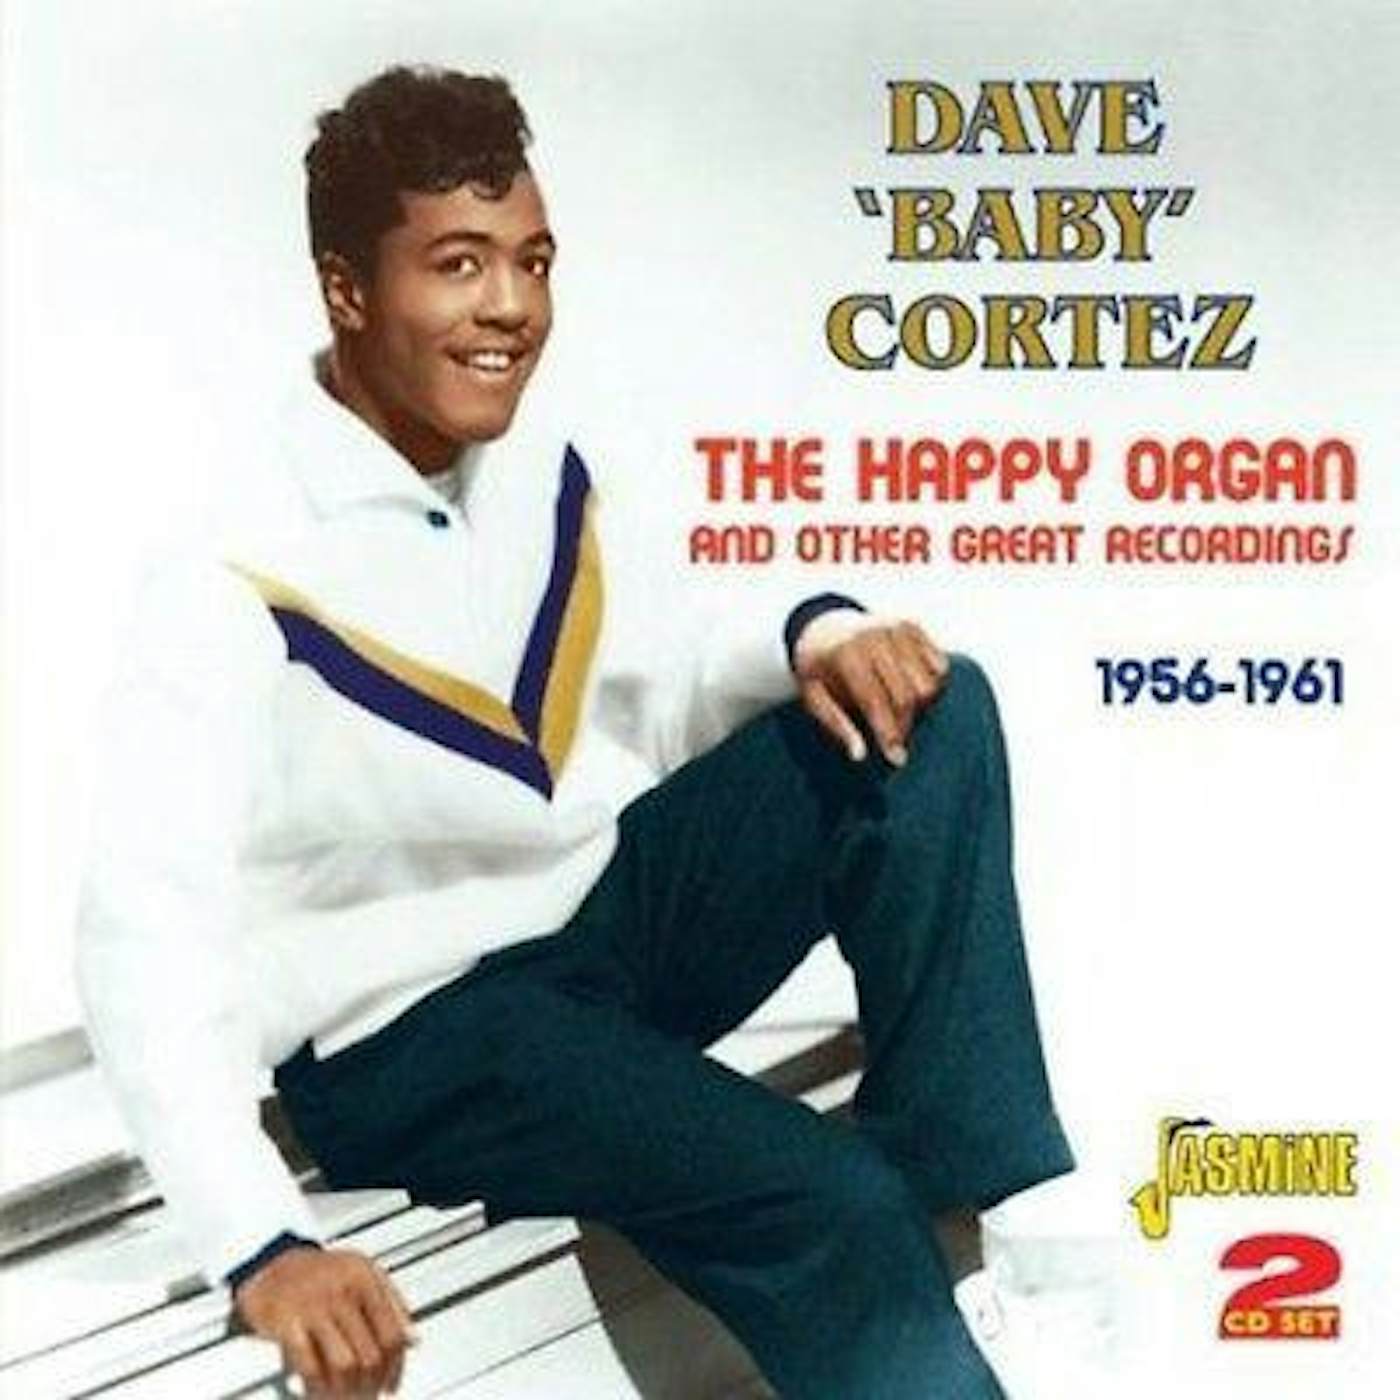 Dave "Baby" Cortez HAPPY ORGAN CD